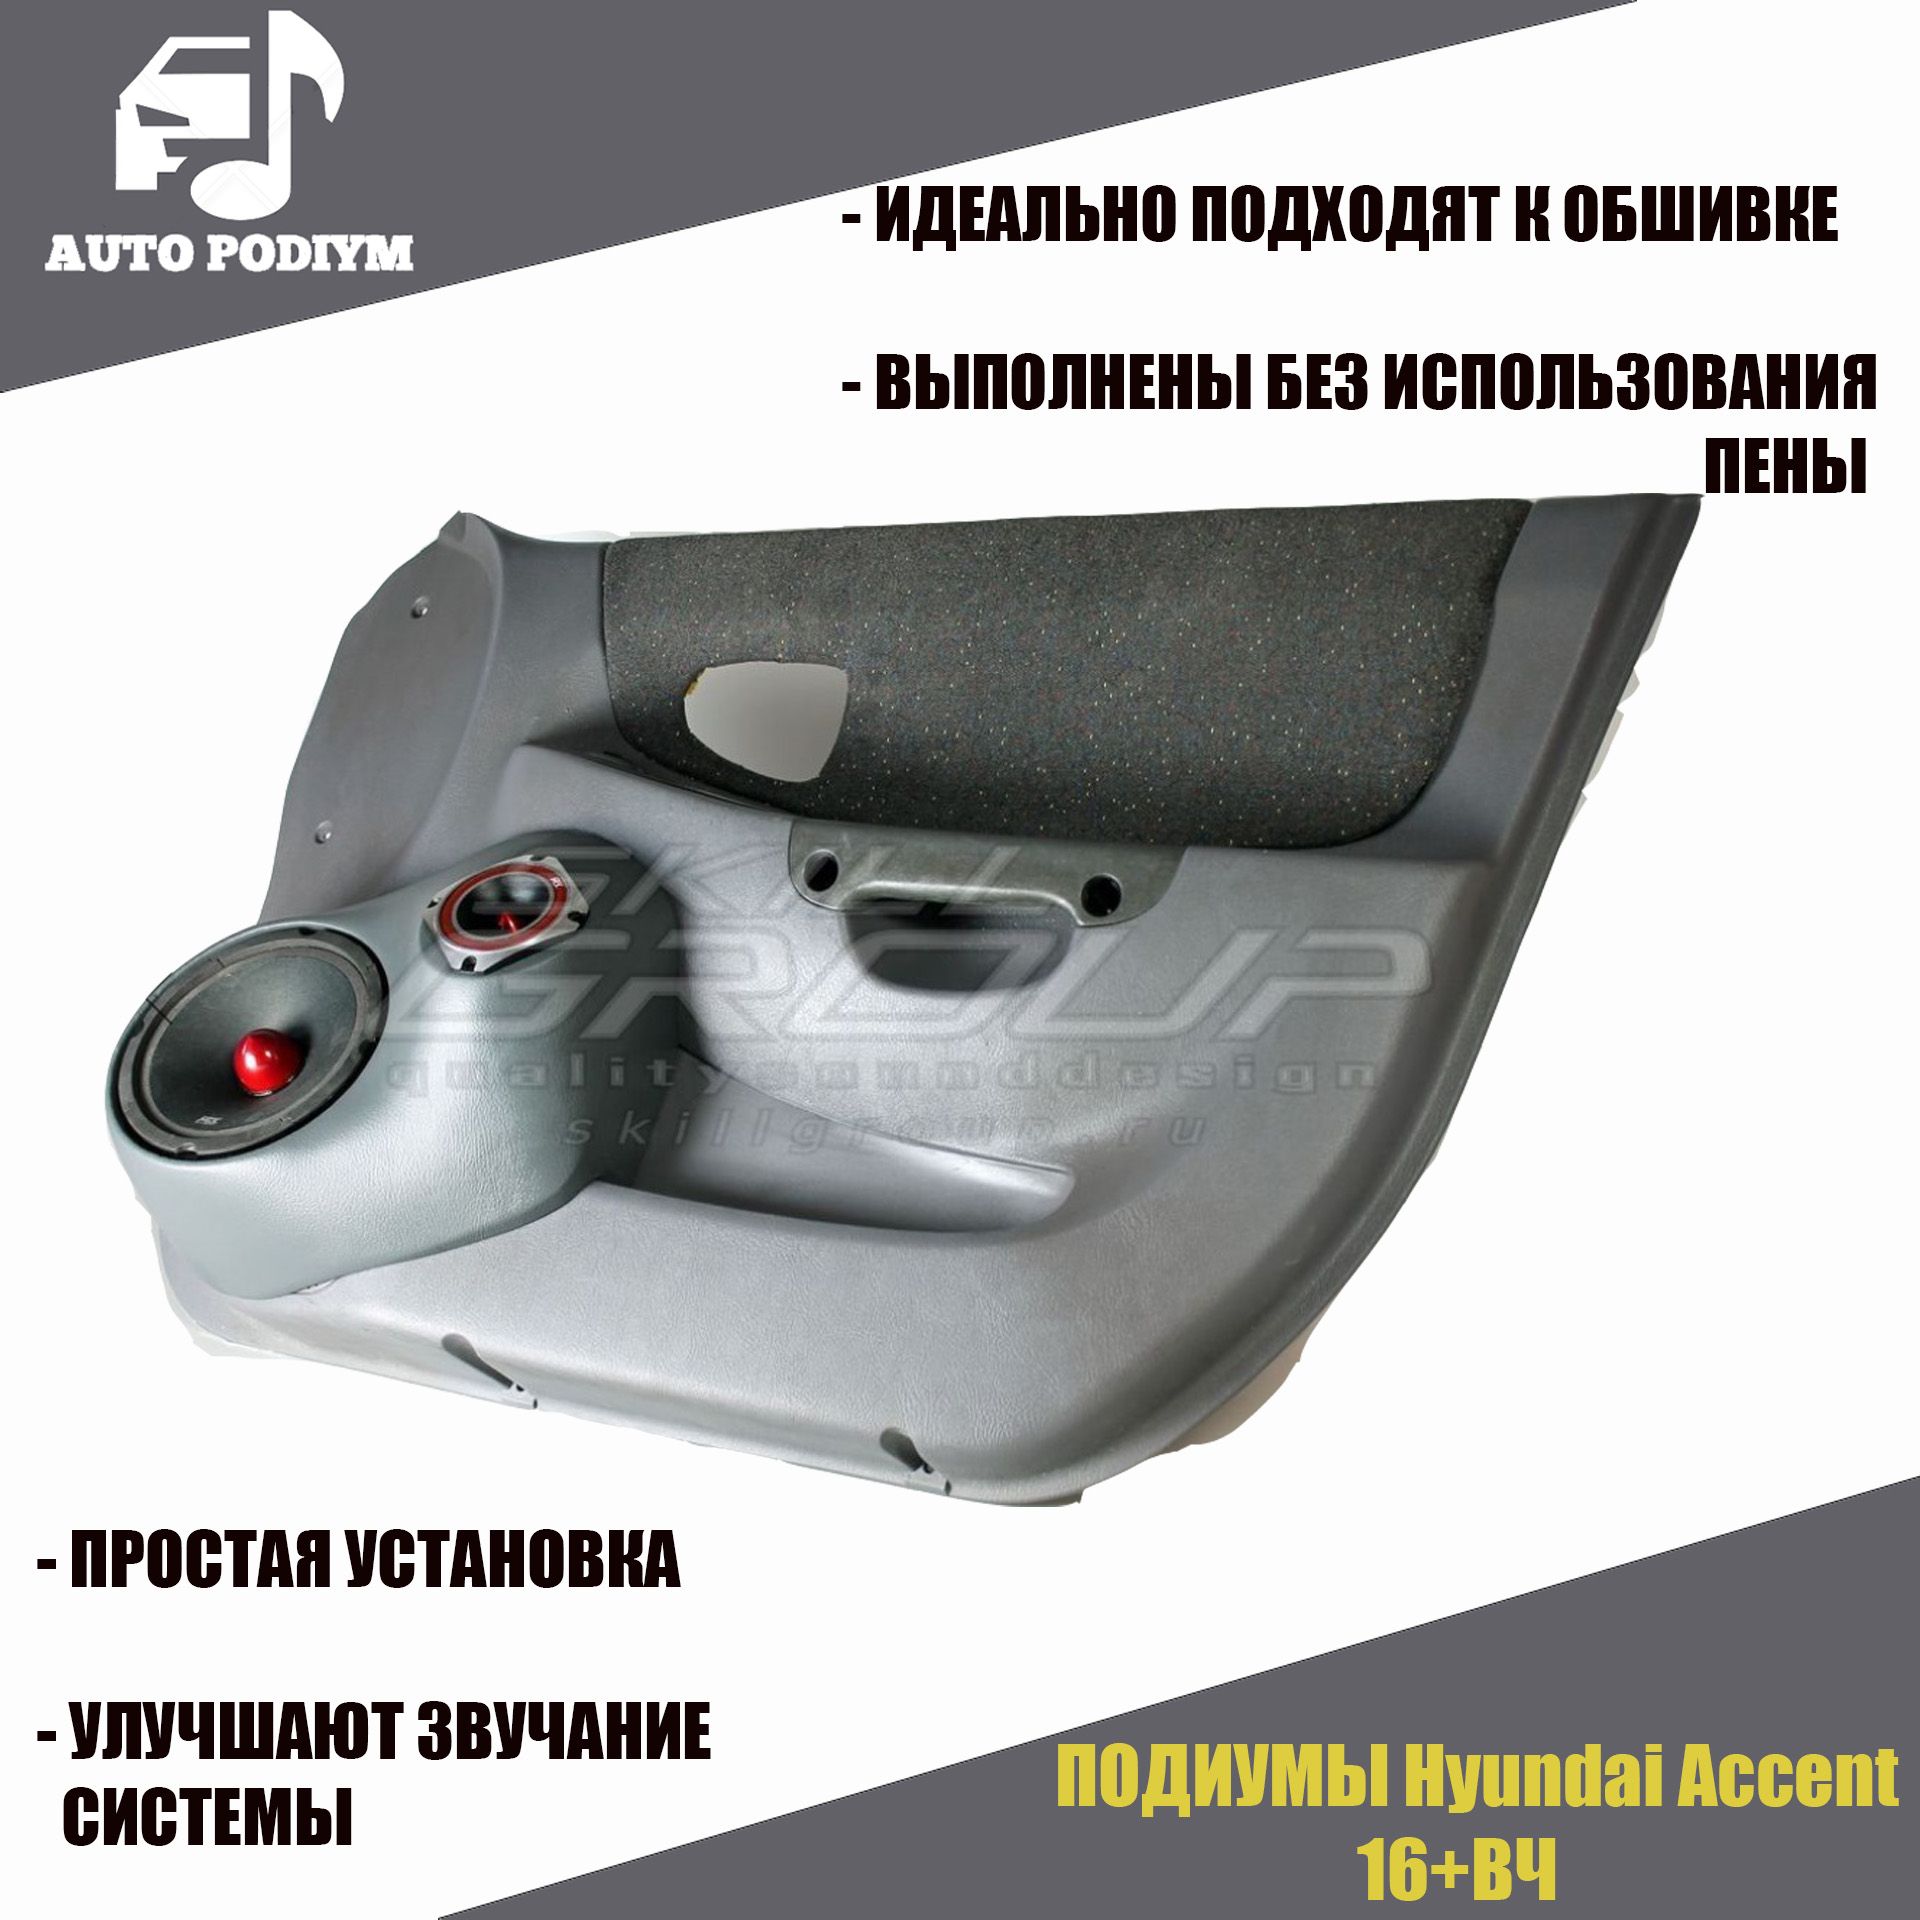 Подиумы Hyundai Accent (16+16+рупор) SG